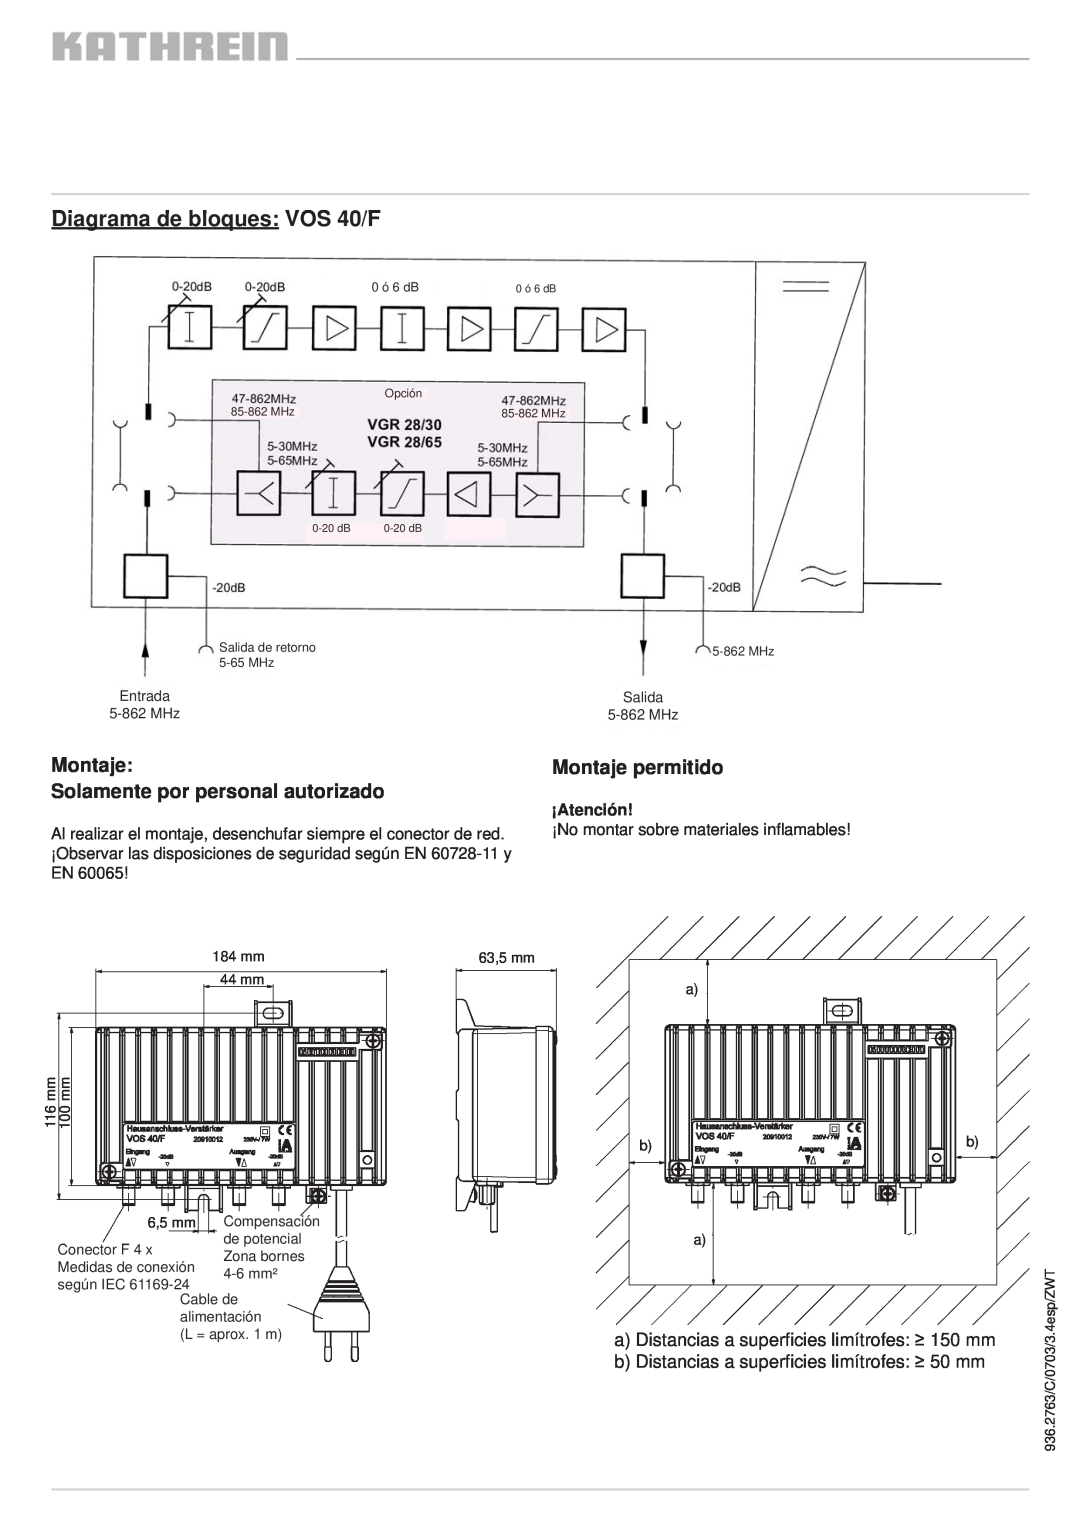 Kathrein VOS 30/F Diagrama de bloques VOS 40/F, Montaje Solamente por personal autorizado, Montaje permitido, ¡Atención 